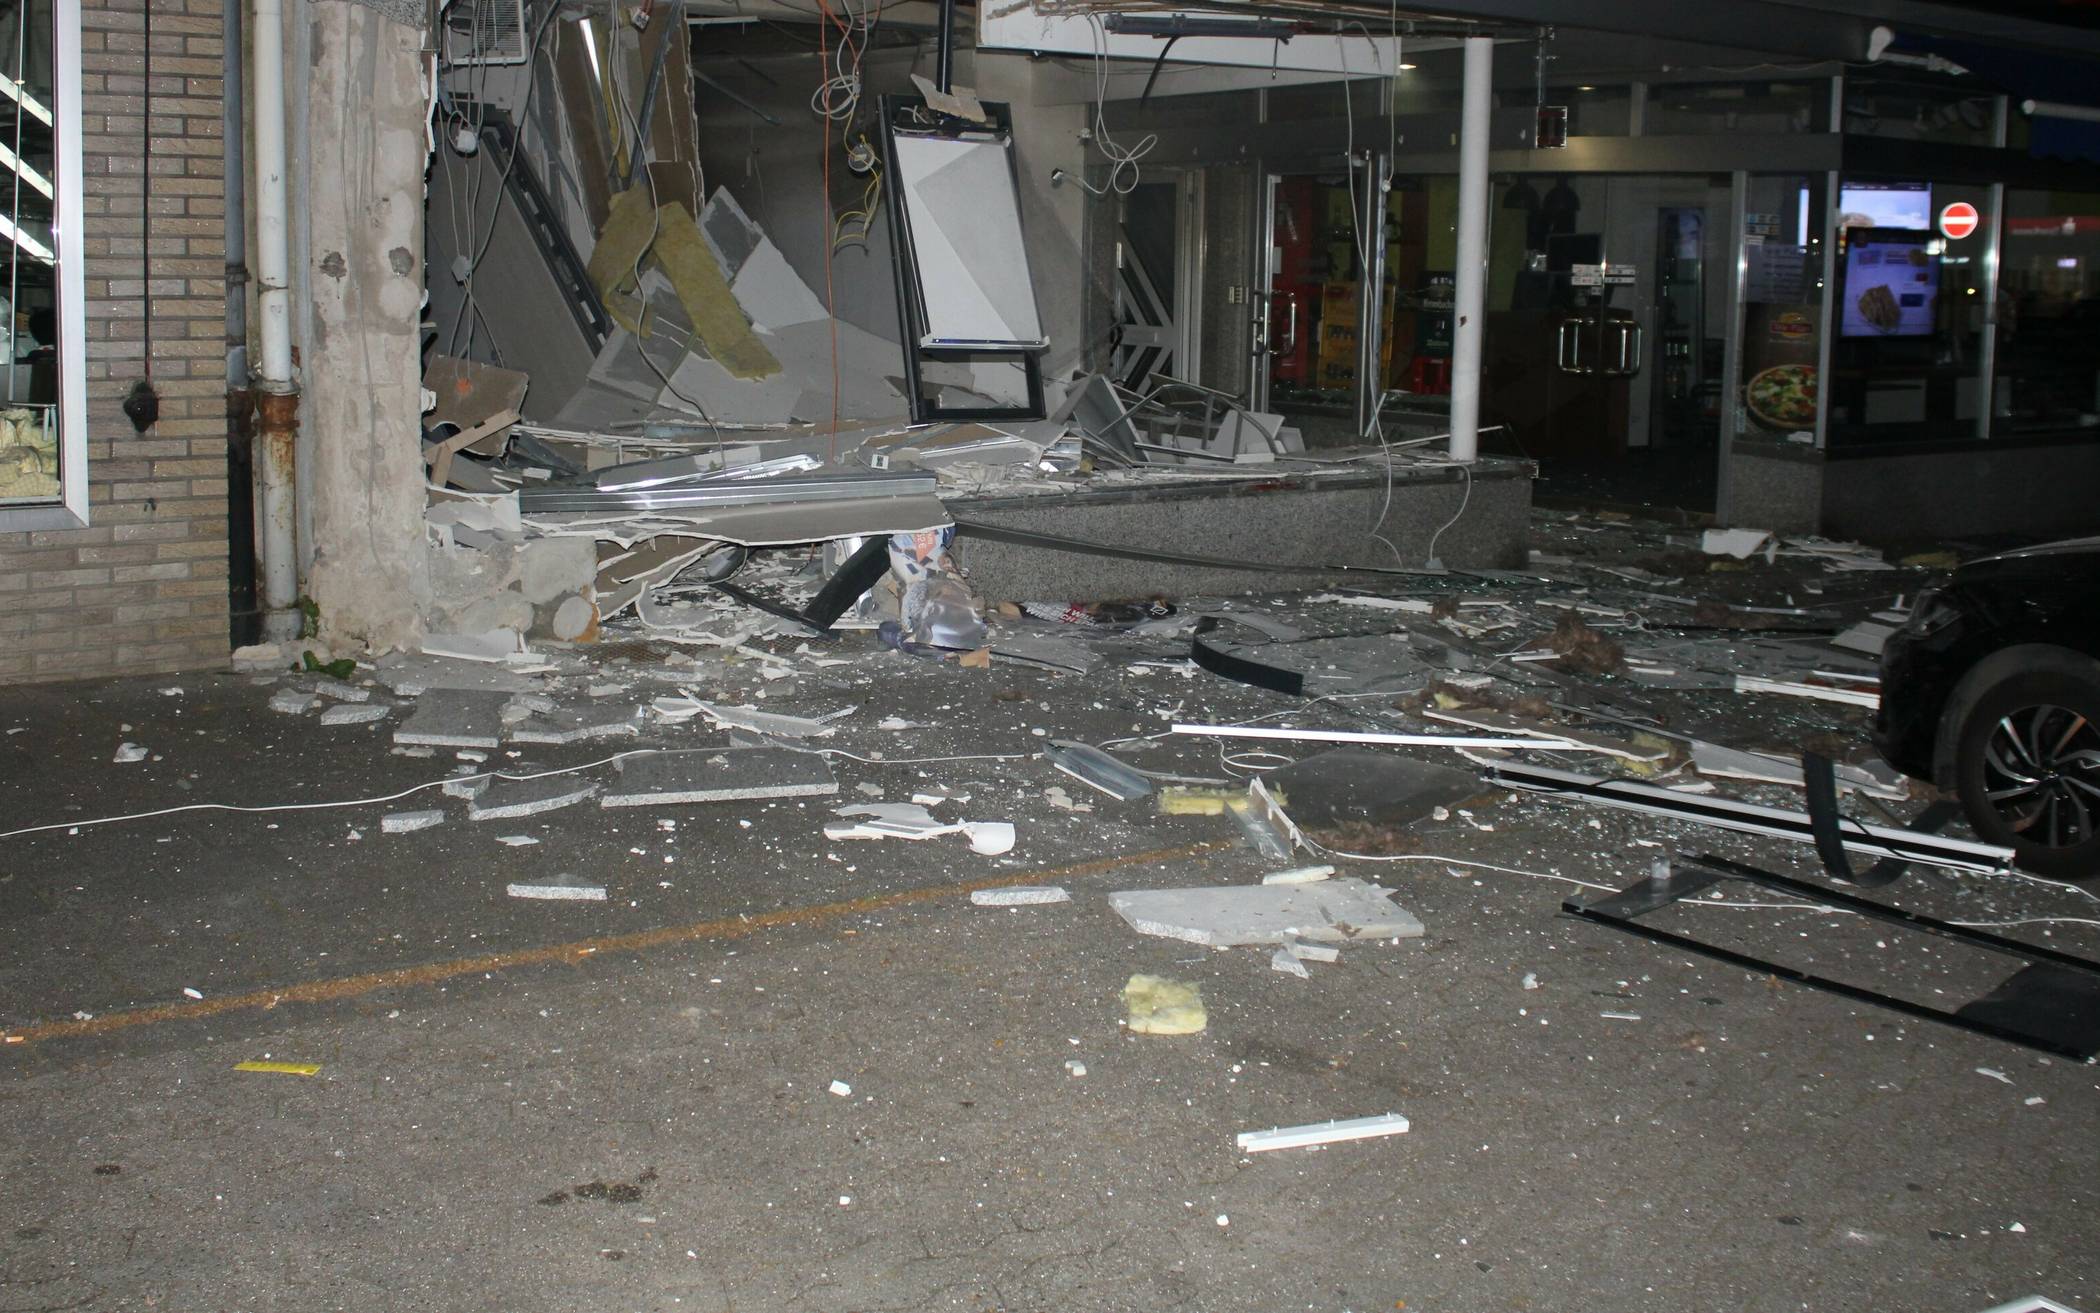  An der Bergheimer Straße wurde ein Geldautomat gesprengt. Das Gebäude wurde dabei stark beschädigt. 